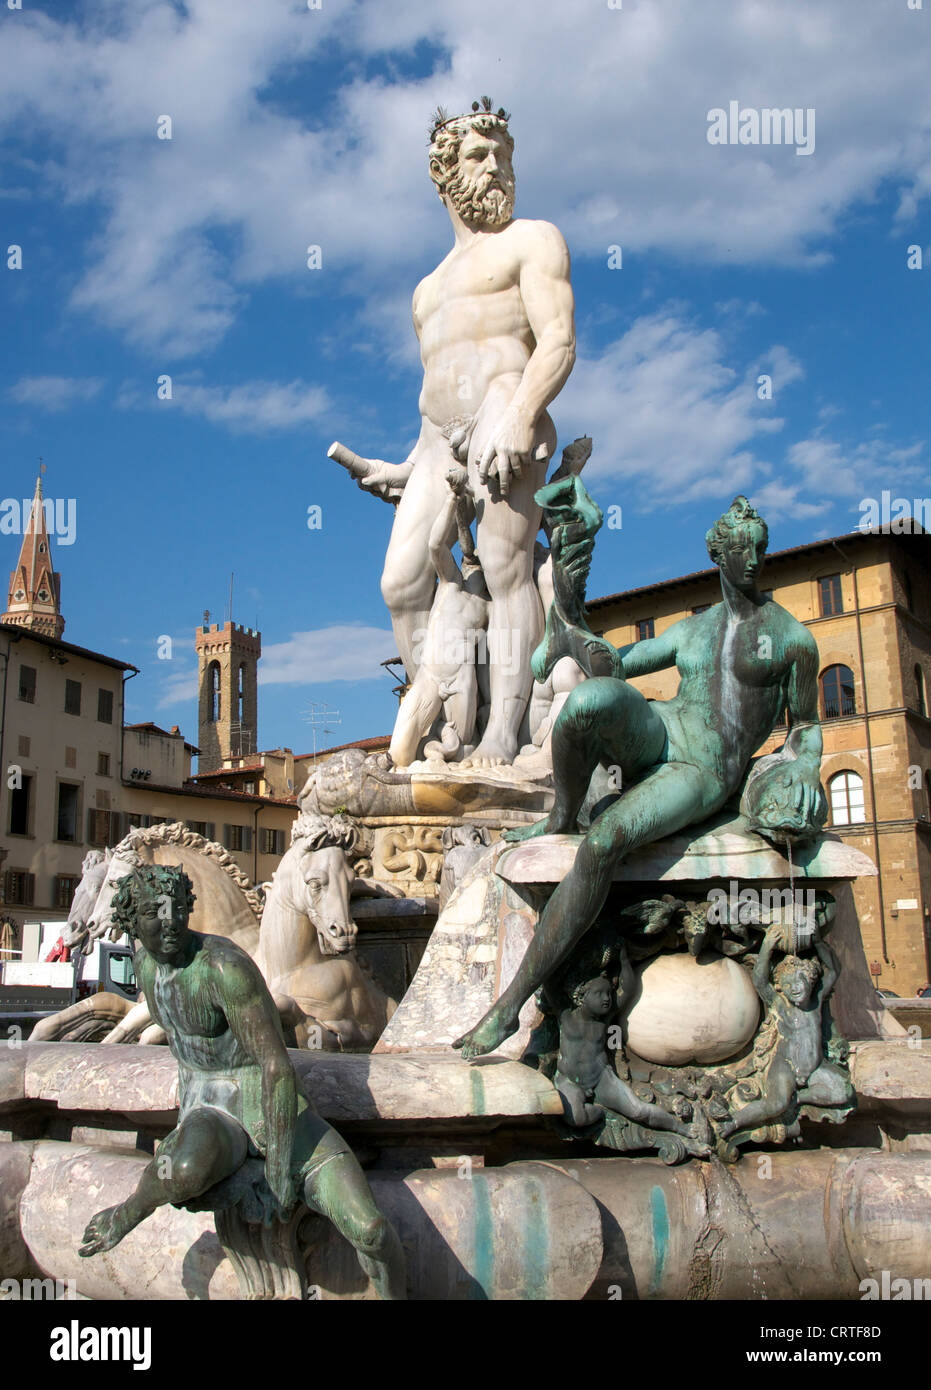 The Fountain of Neptune by Bartolomeo Ammannati Piazza della Signoria Florence Italy Stock Photo